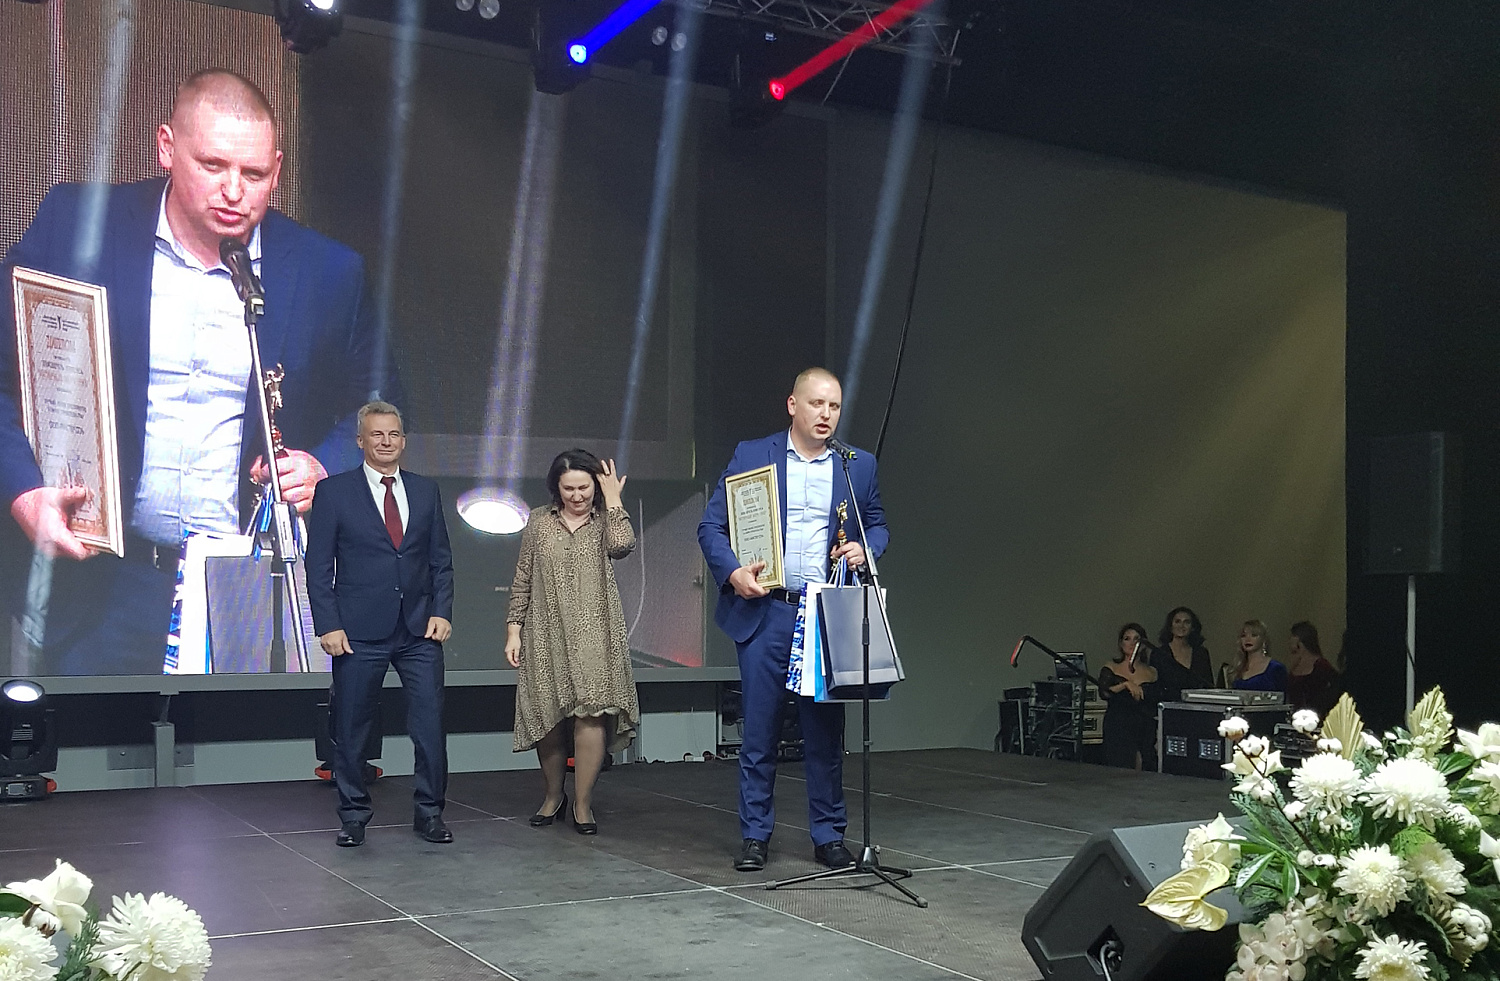 Мастер СПА победитель в региональной бизнес-премии «Янтарный Меркурий»